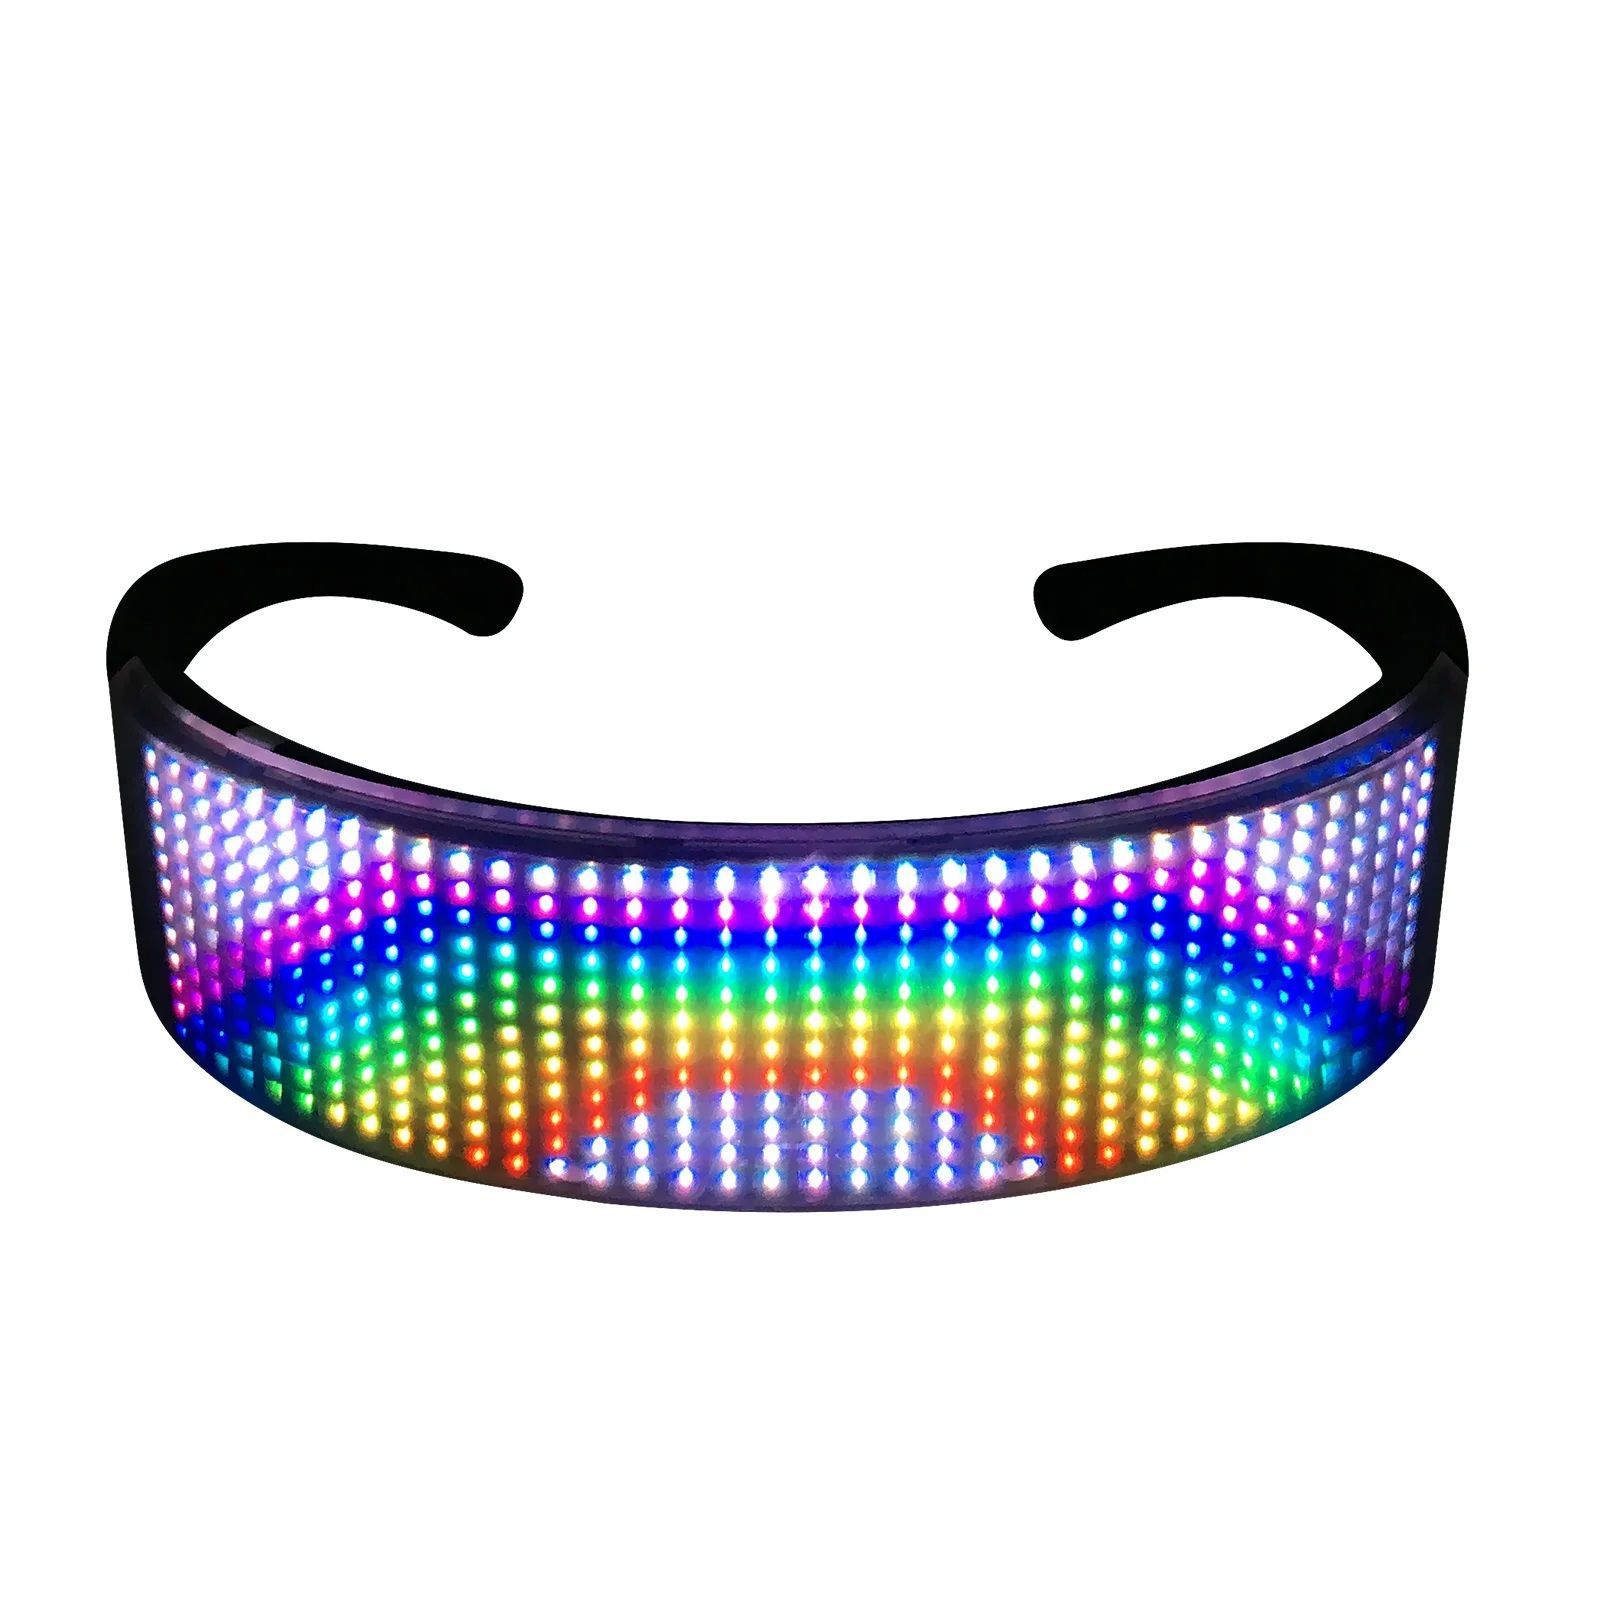 очки cyberpunk светящиеся led светодиодные фото 55